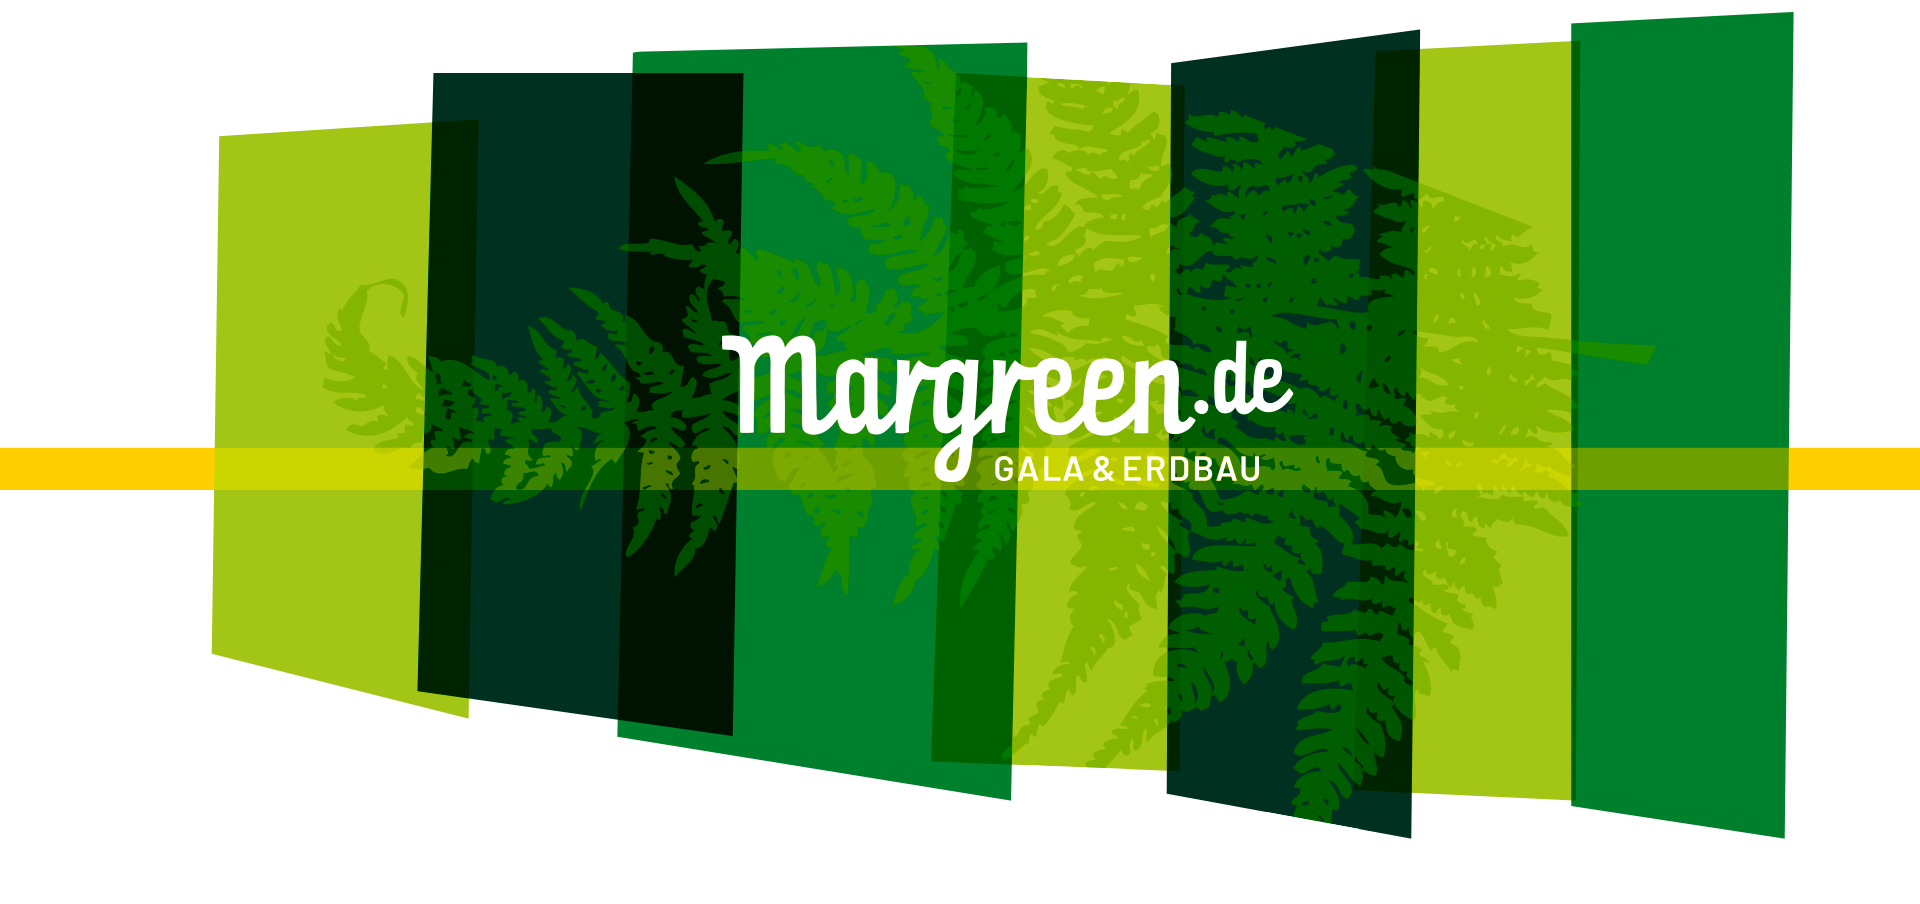 margreen-schema